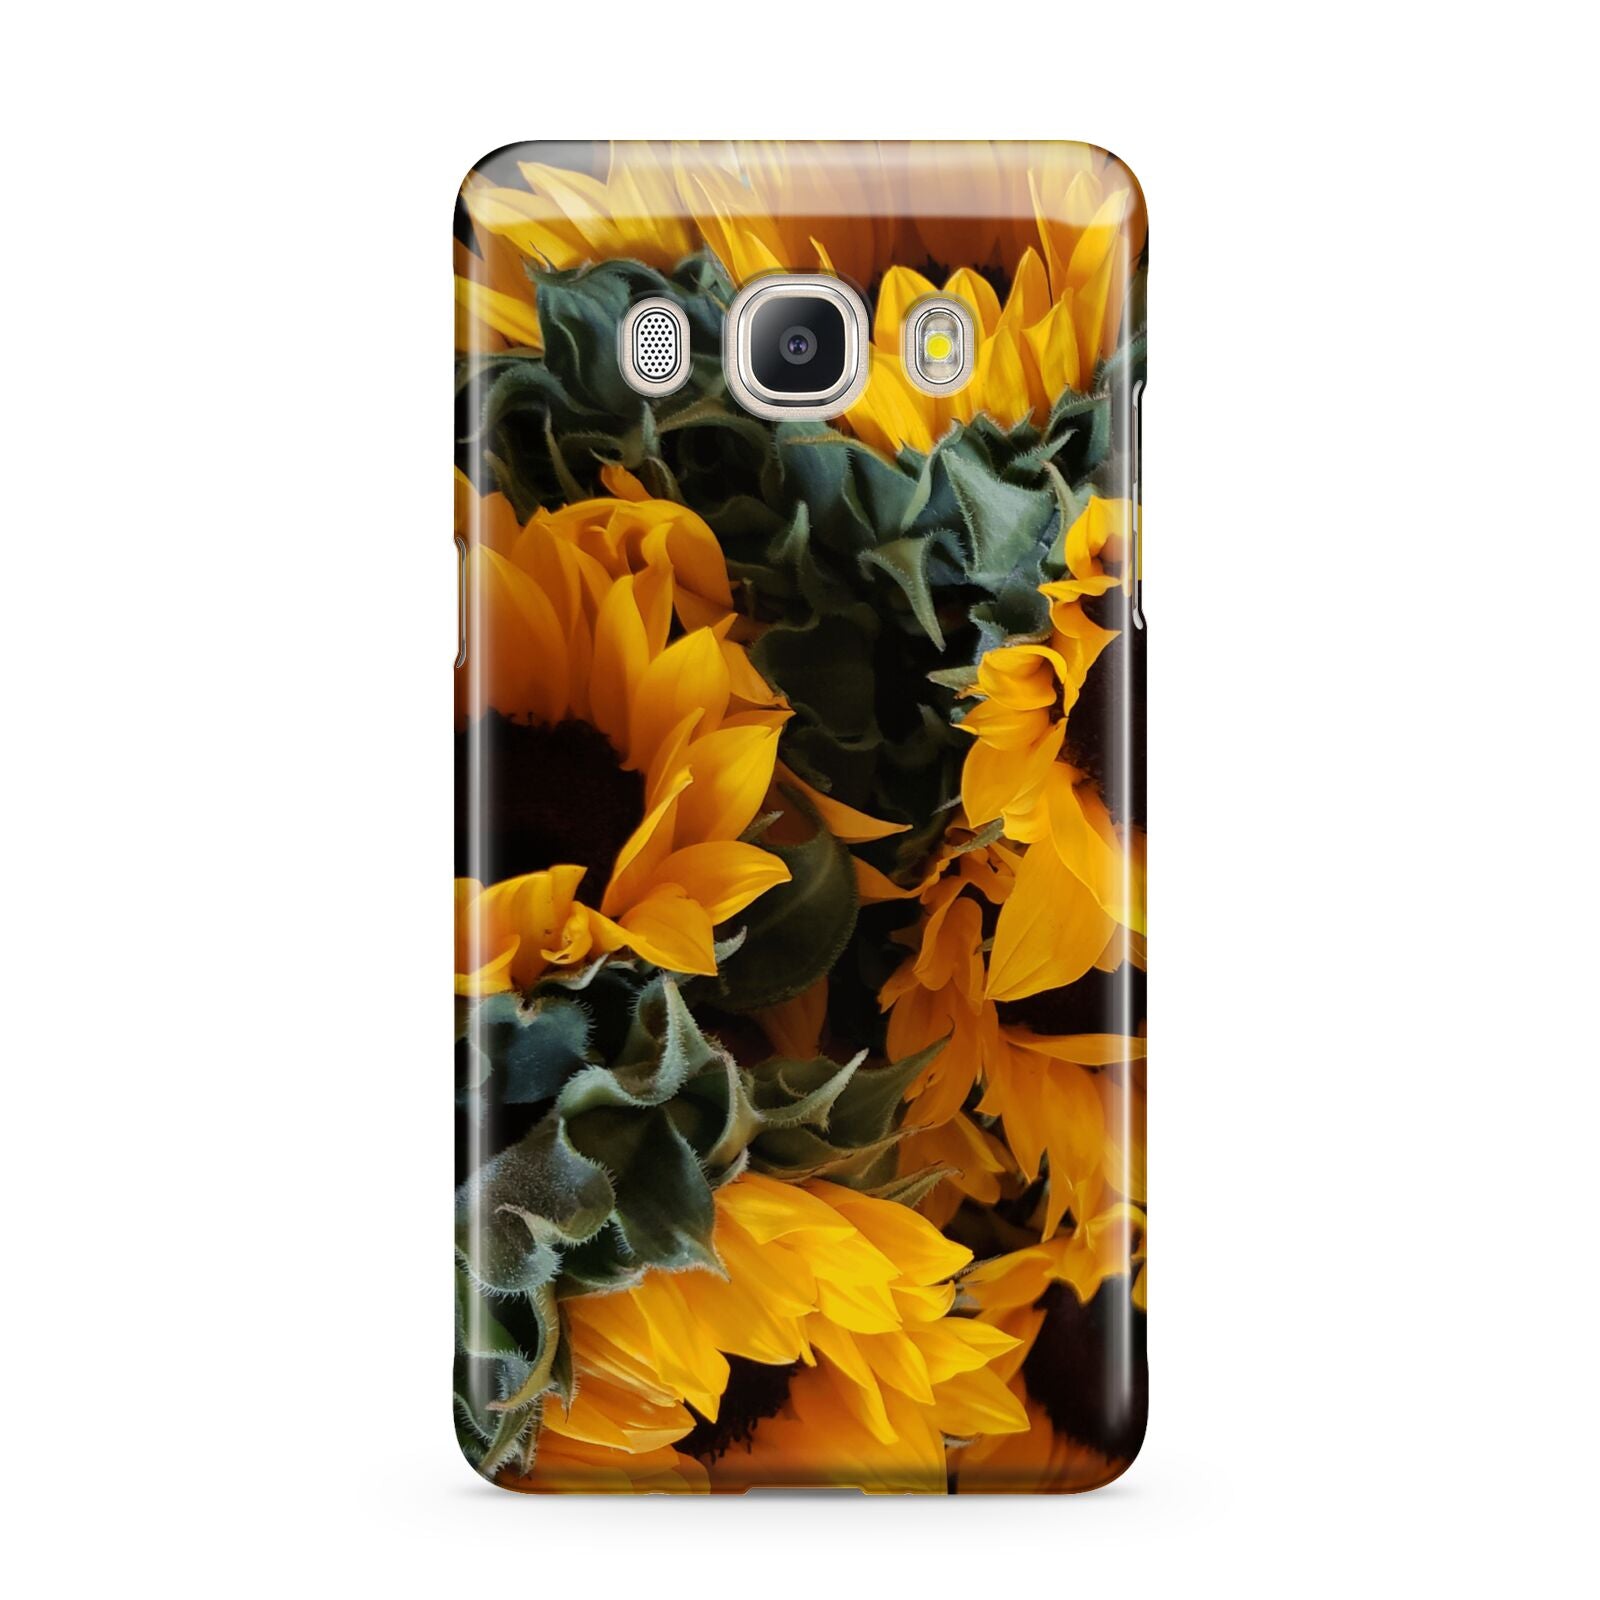 Sunflower Samsung Galaxy J5 2016 Case